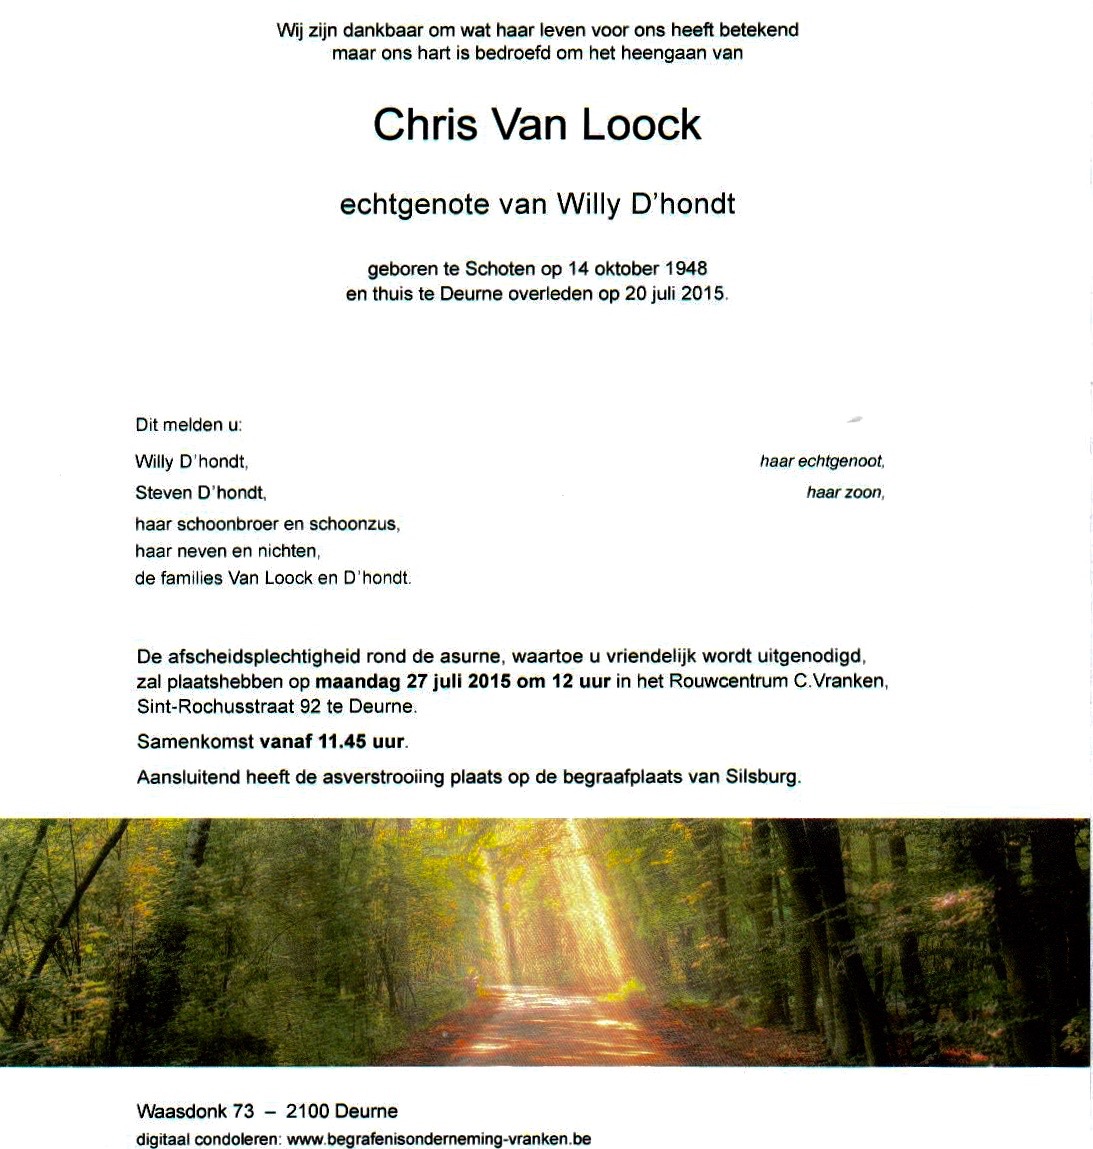 Chris Van Loock